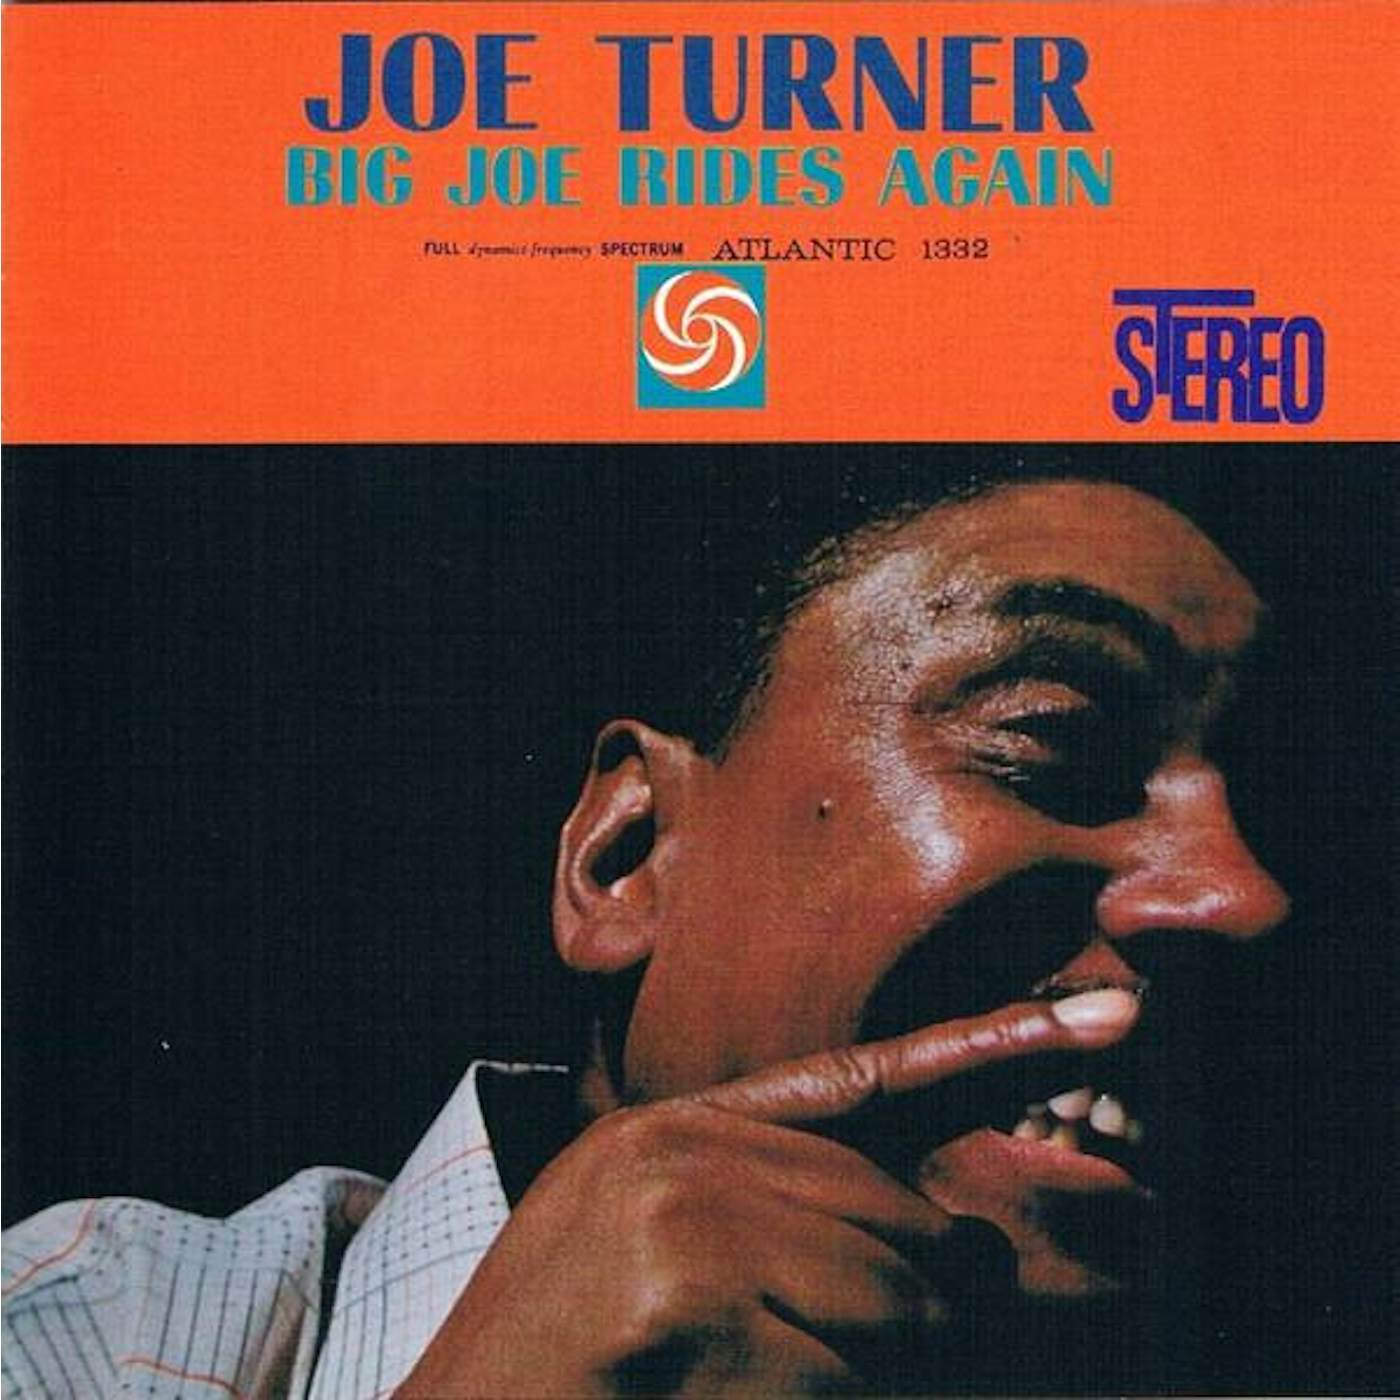 Big Joe Turner BIG JOE RIDES AGAIN CD